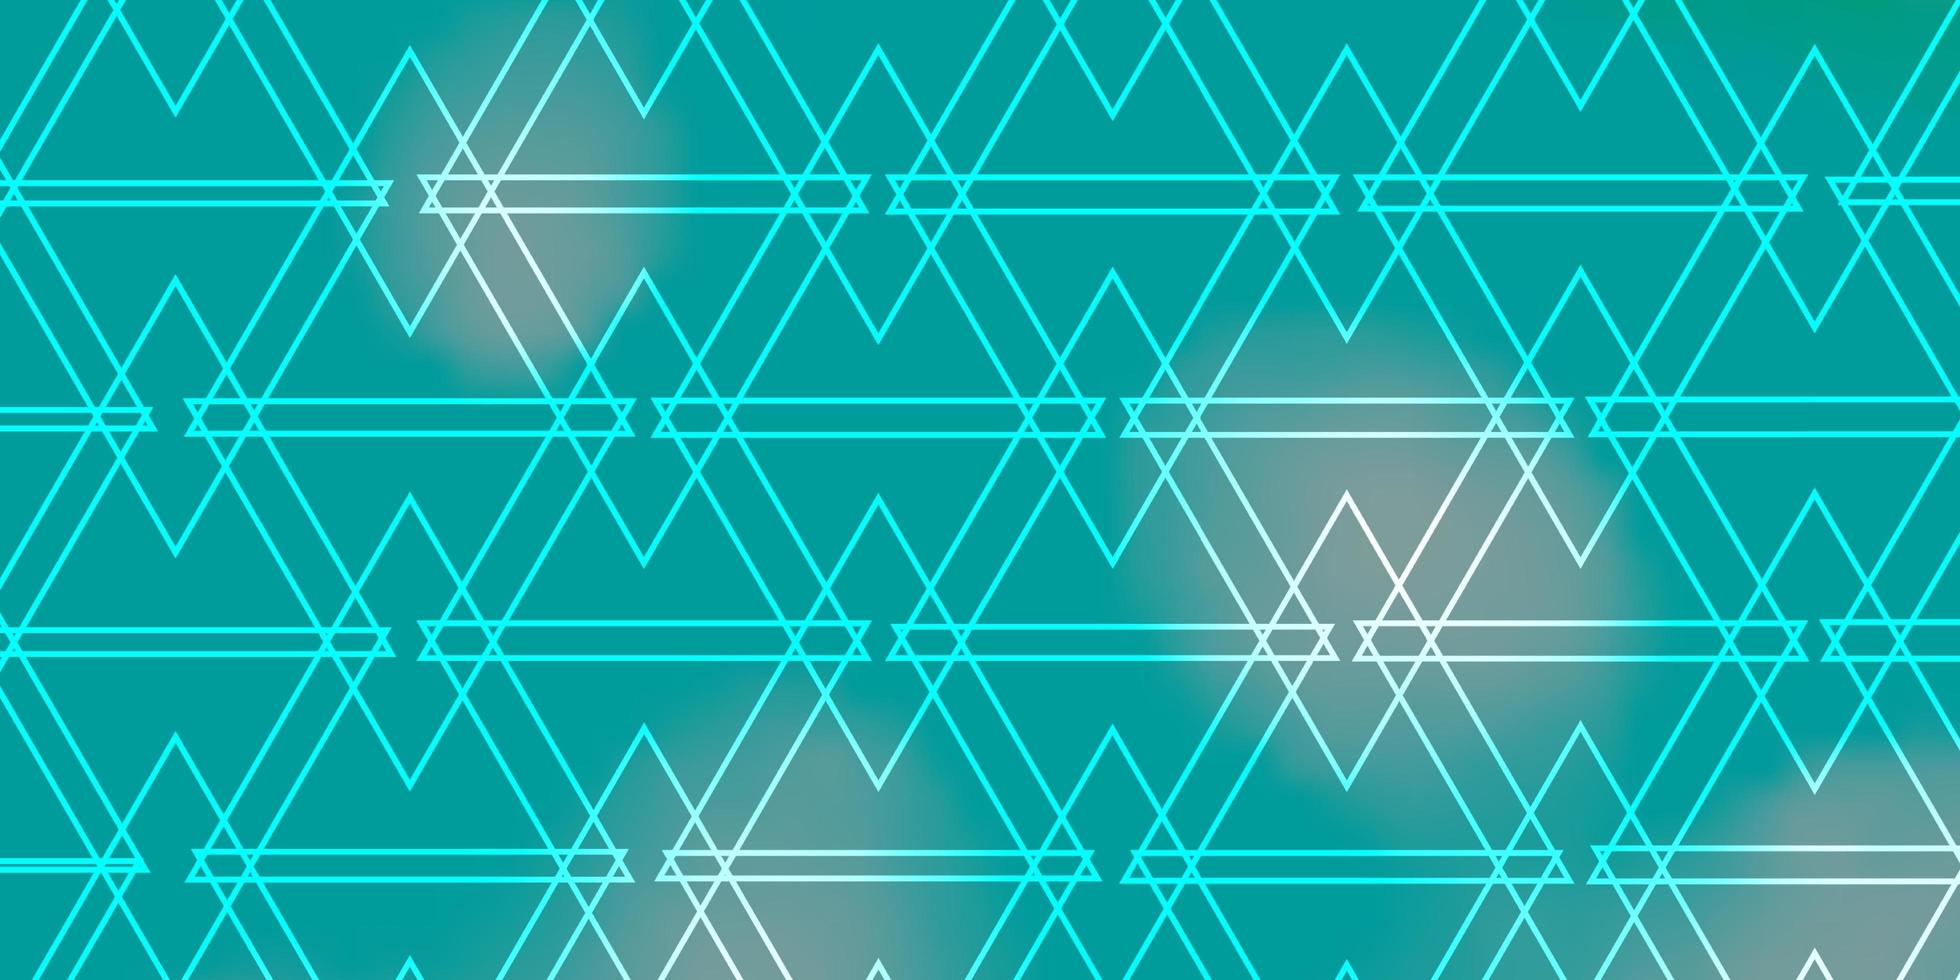 ljusblå, grön vektorlayout med linjer, trianglar. vektor